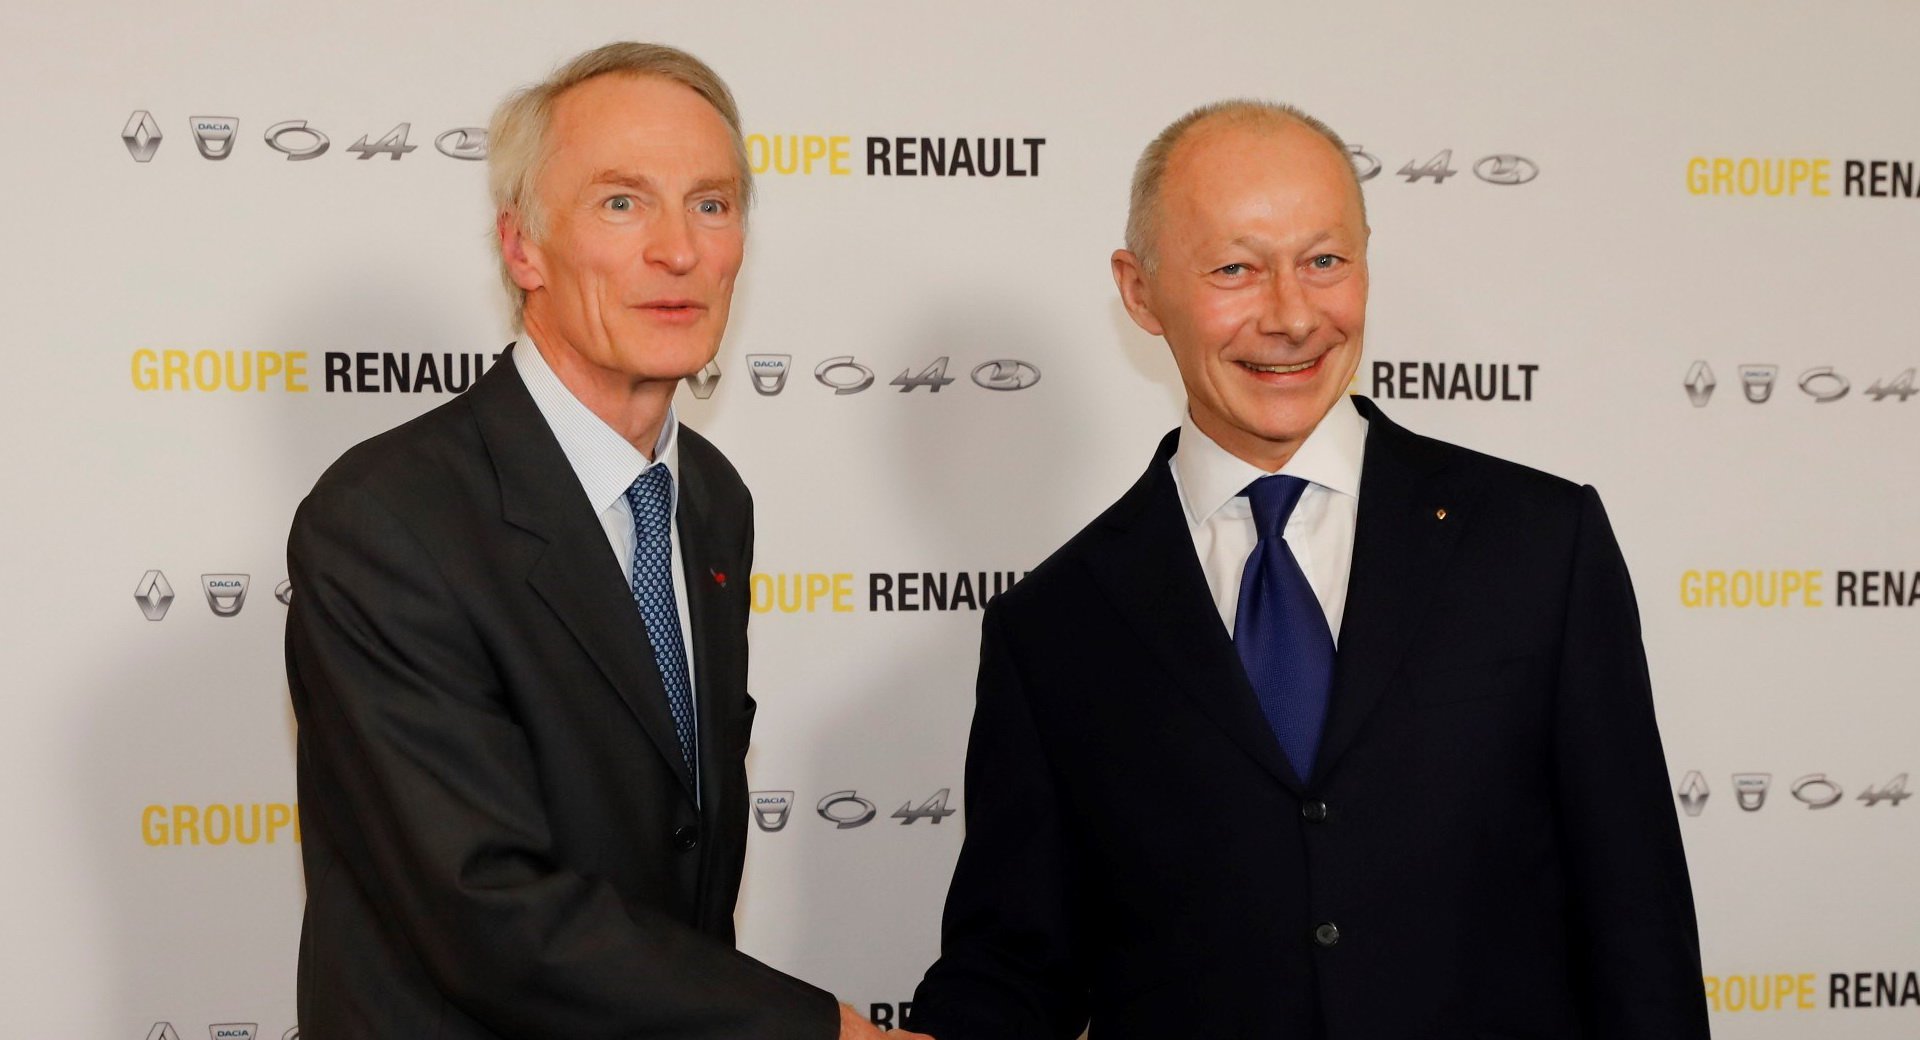 Berita, Sennard dan Bollore: Carlos Ghosn Resmi Mundur Dari Renault!